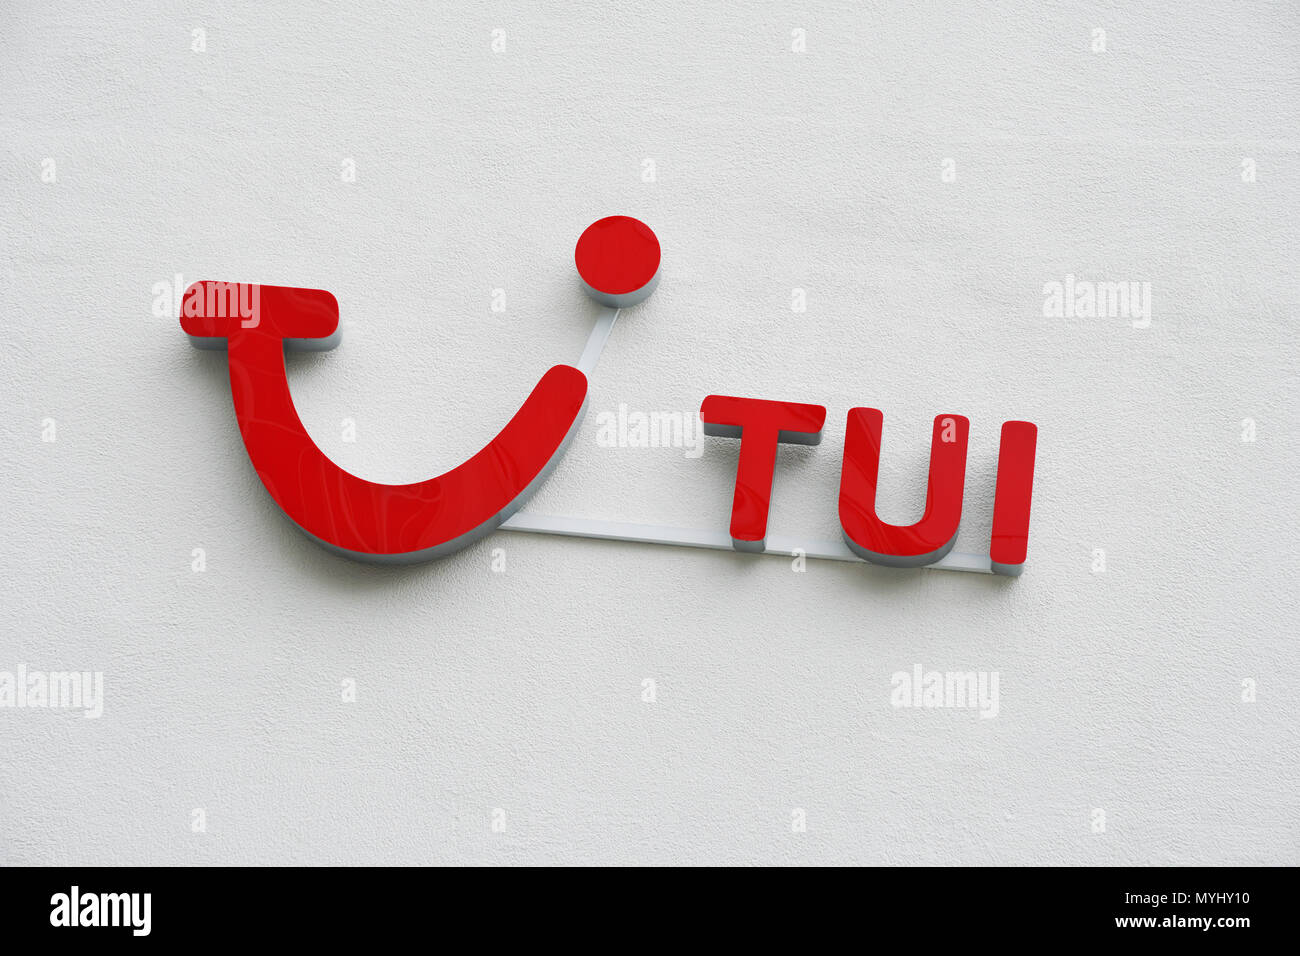 Hanovre, Allemagne - le 6 juin 2018 : TUI Logos et marques signe sur mur. TUI Group est la plus grande entreprise de voyages et tourisme dans le monde, dont le siège est à Hanovre. Banque D'Images